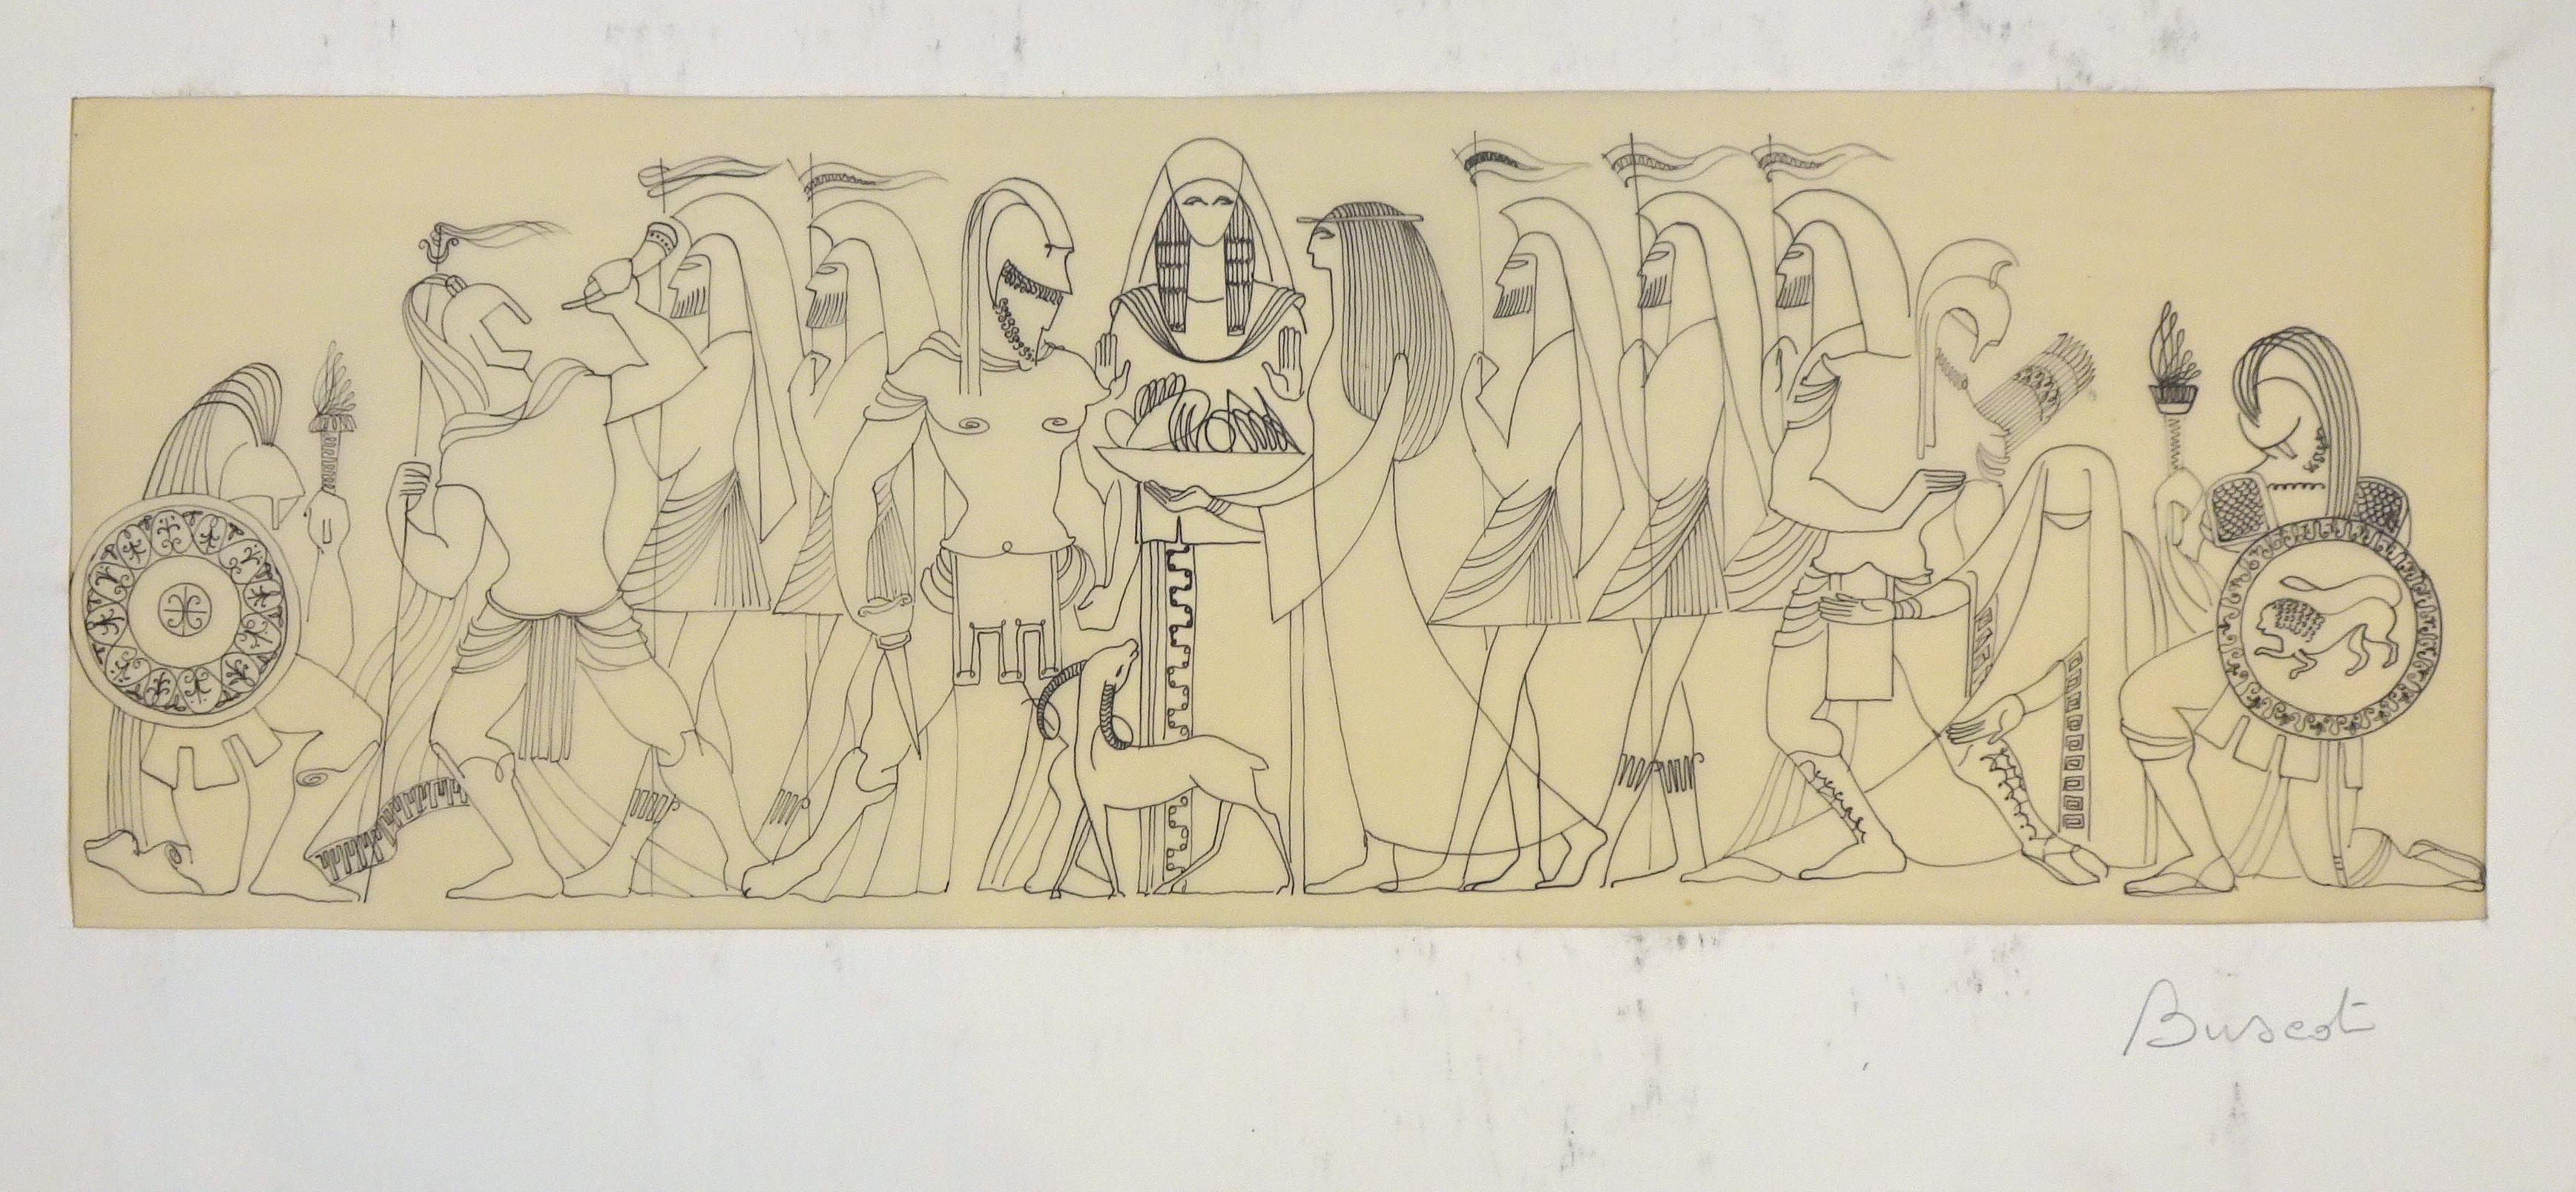 Scène mythologique - dessin original à l'encre sur parchemin par Buscot 